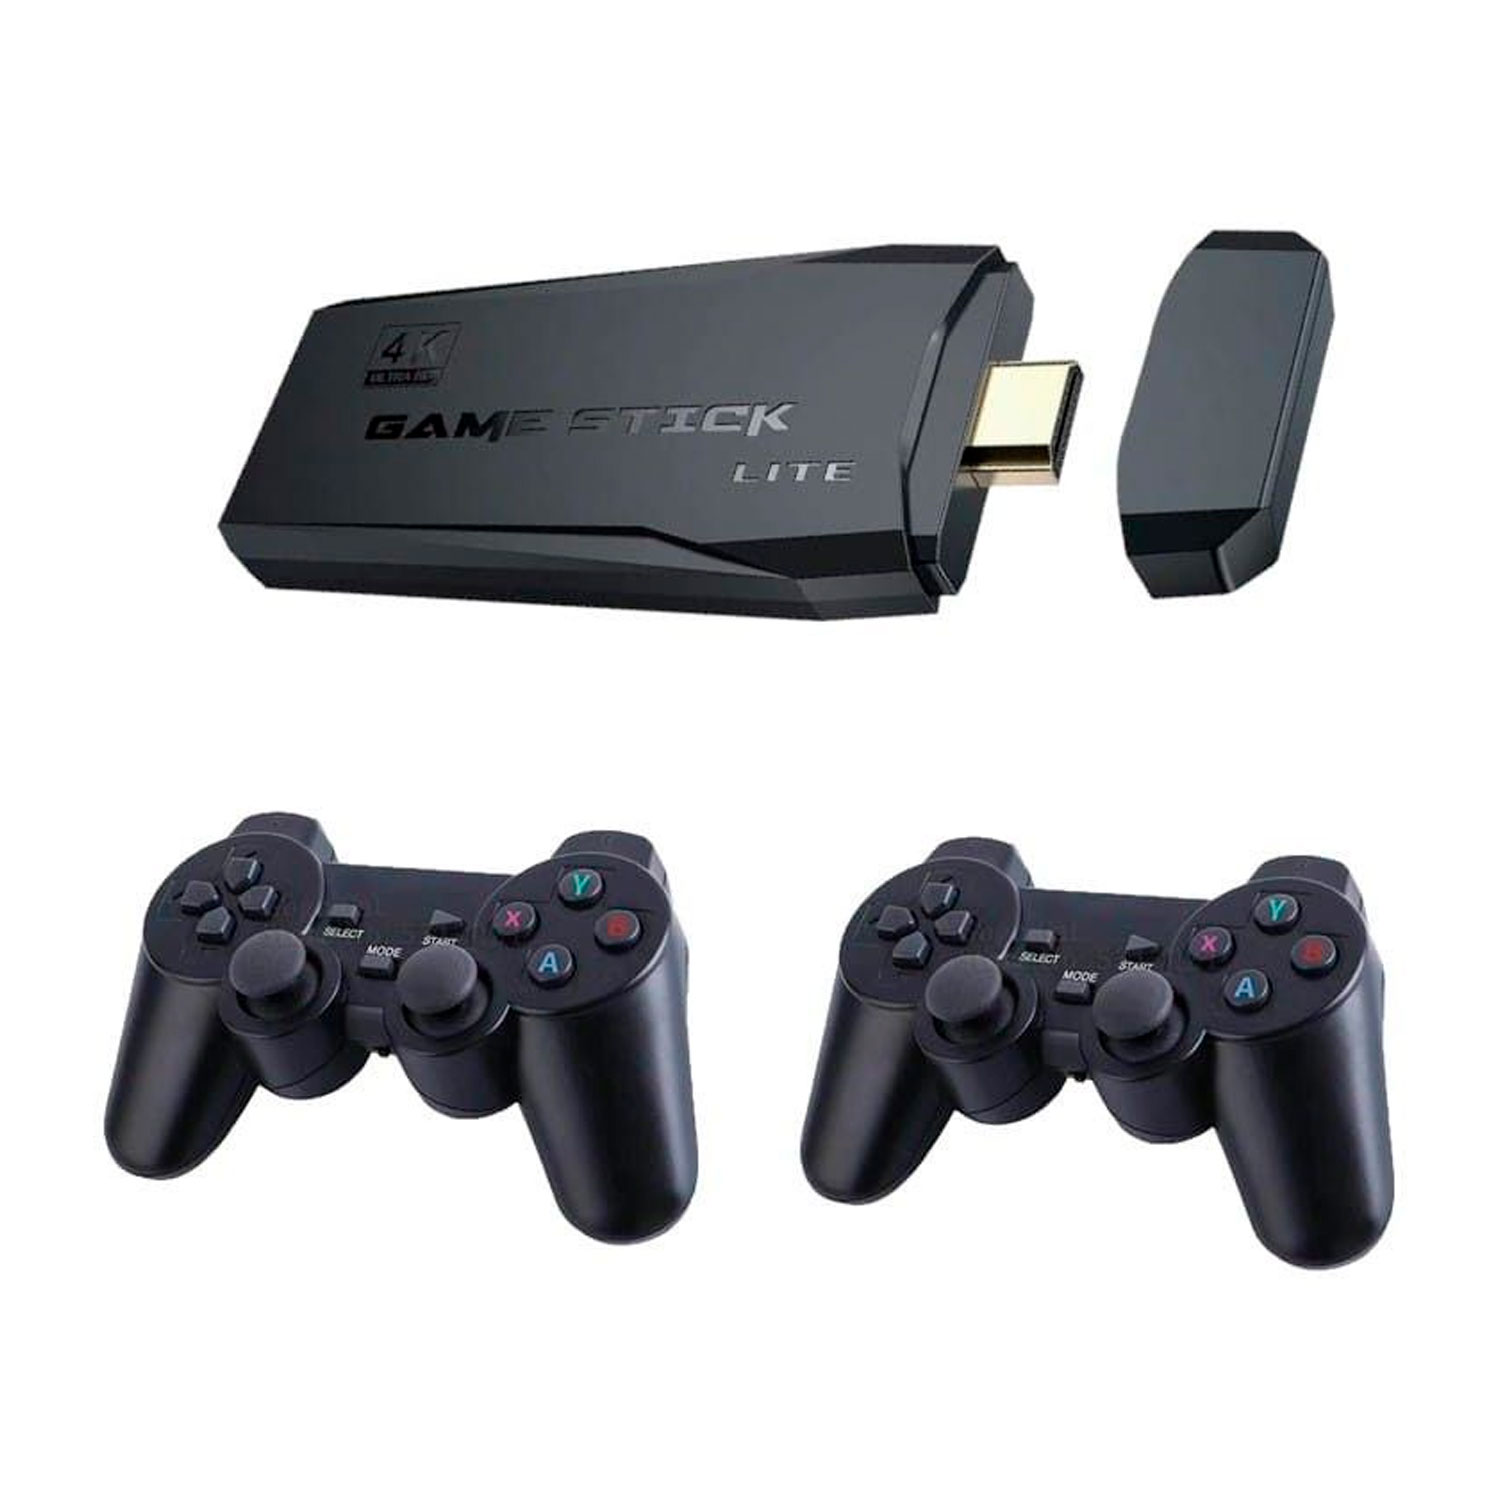 Ps4 com Jogo e Dois Controles  Console de Videogame Playstation